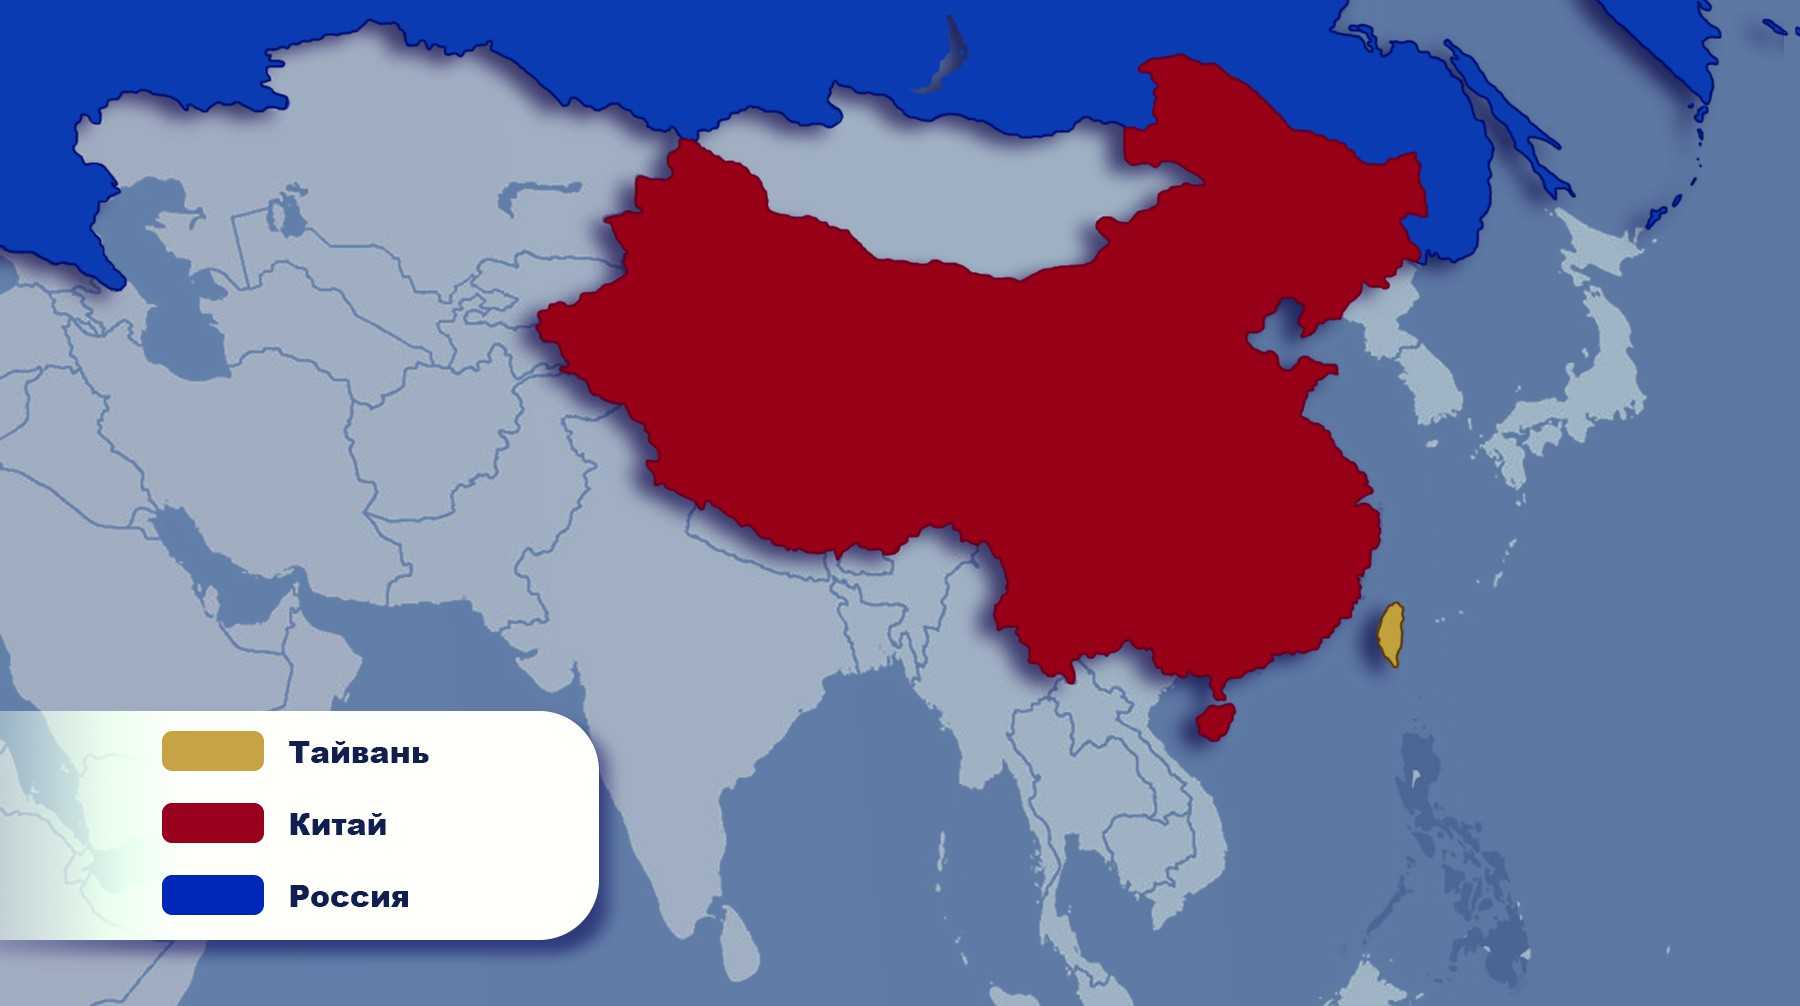 Тайвань на китайском. Китай Тайвань. Китай и Тайвань на карте. Тайвань и Китай конфликт. Территория Тайваня и Китая.